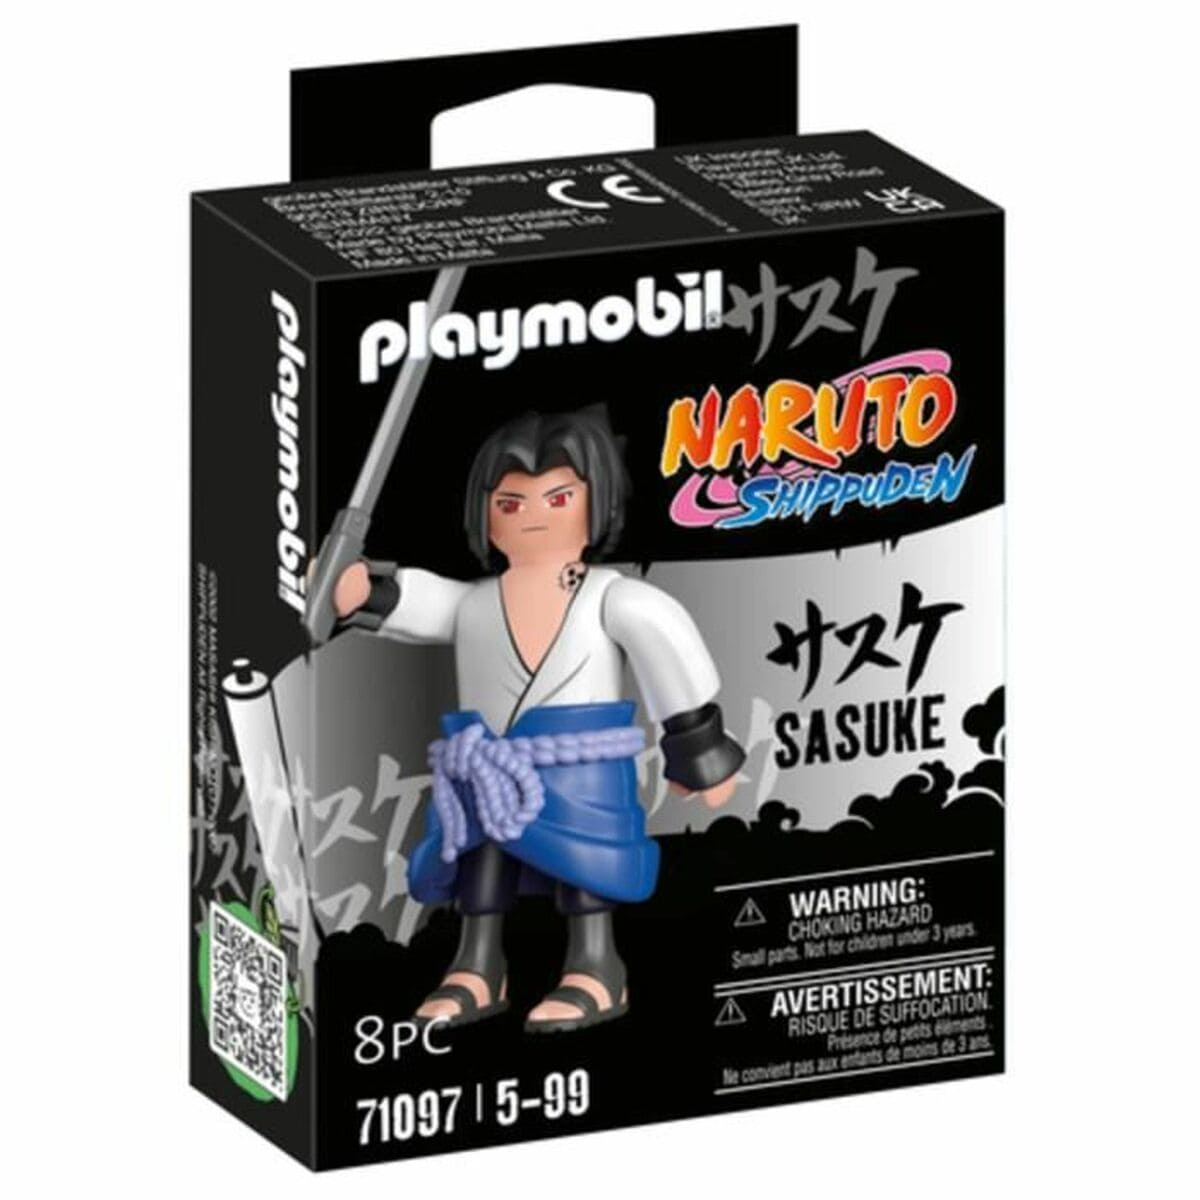 Playmobil Spielzeug | Kostüme > Spielzeug und Spiele > Action-Figuren Actionfiguren Playmobil Sasuke